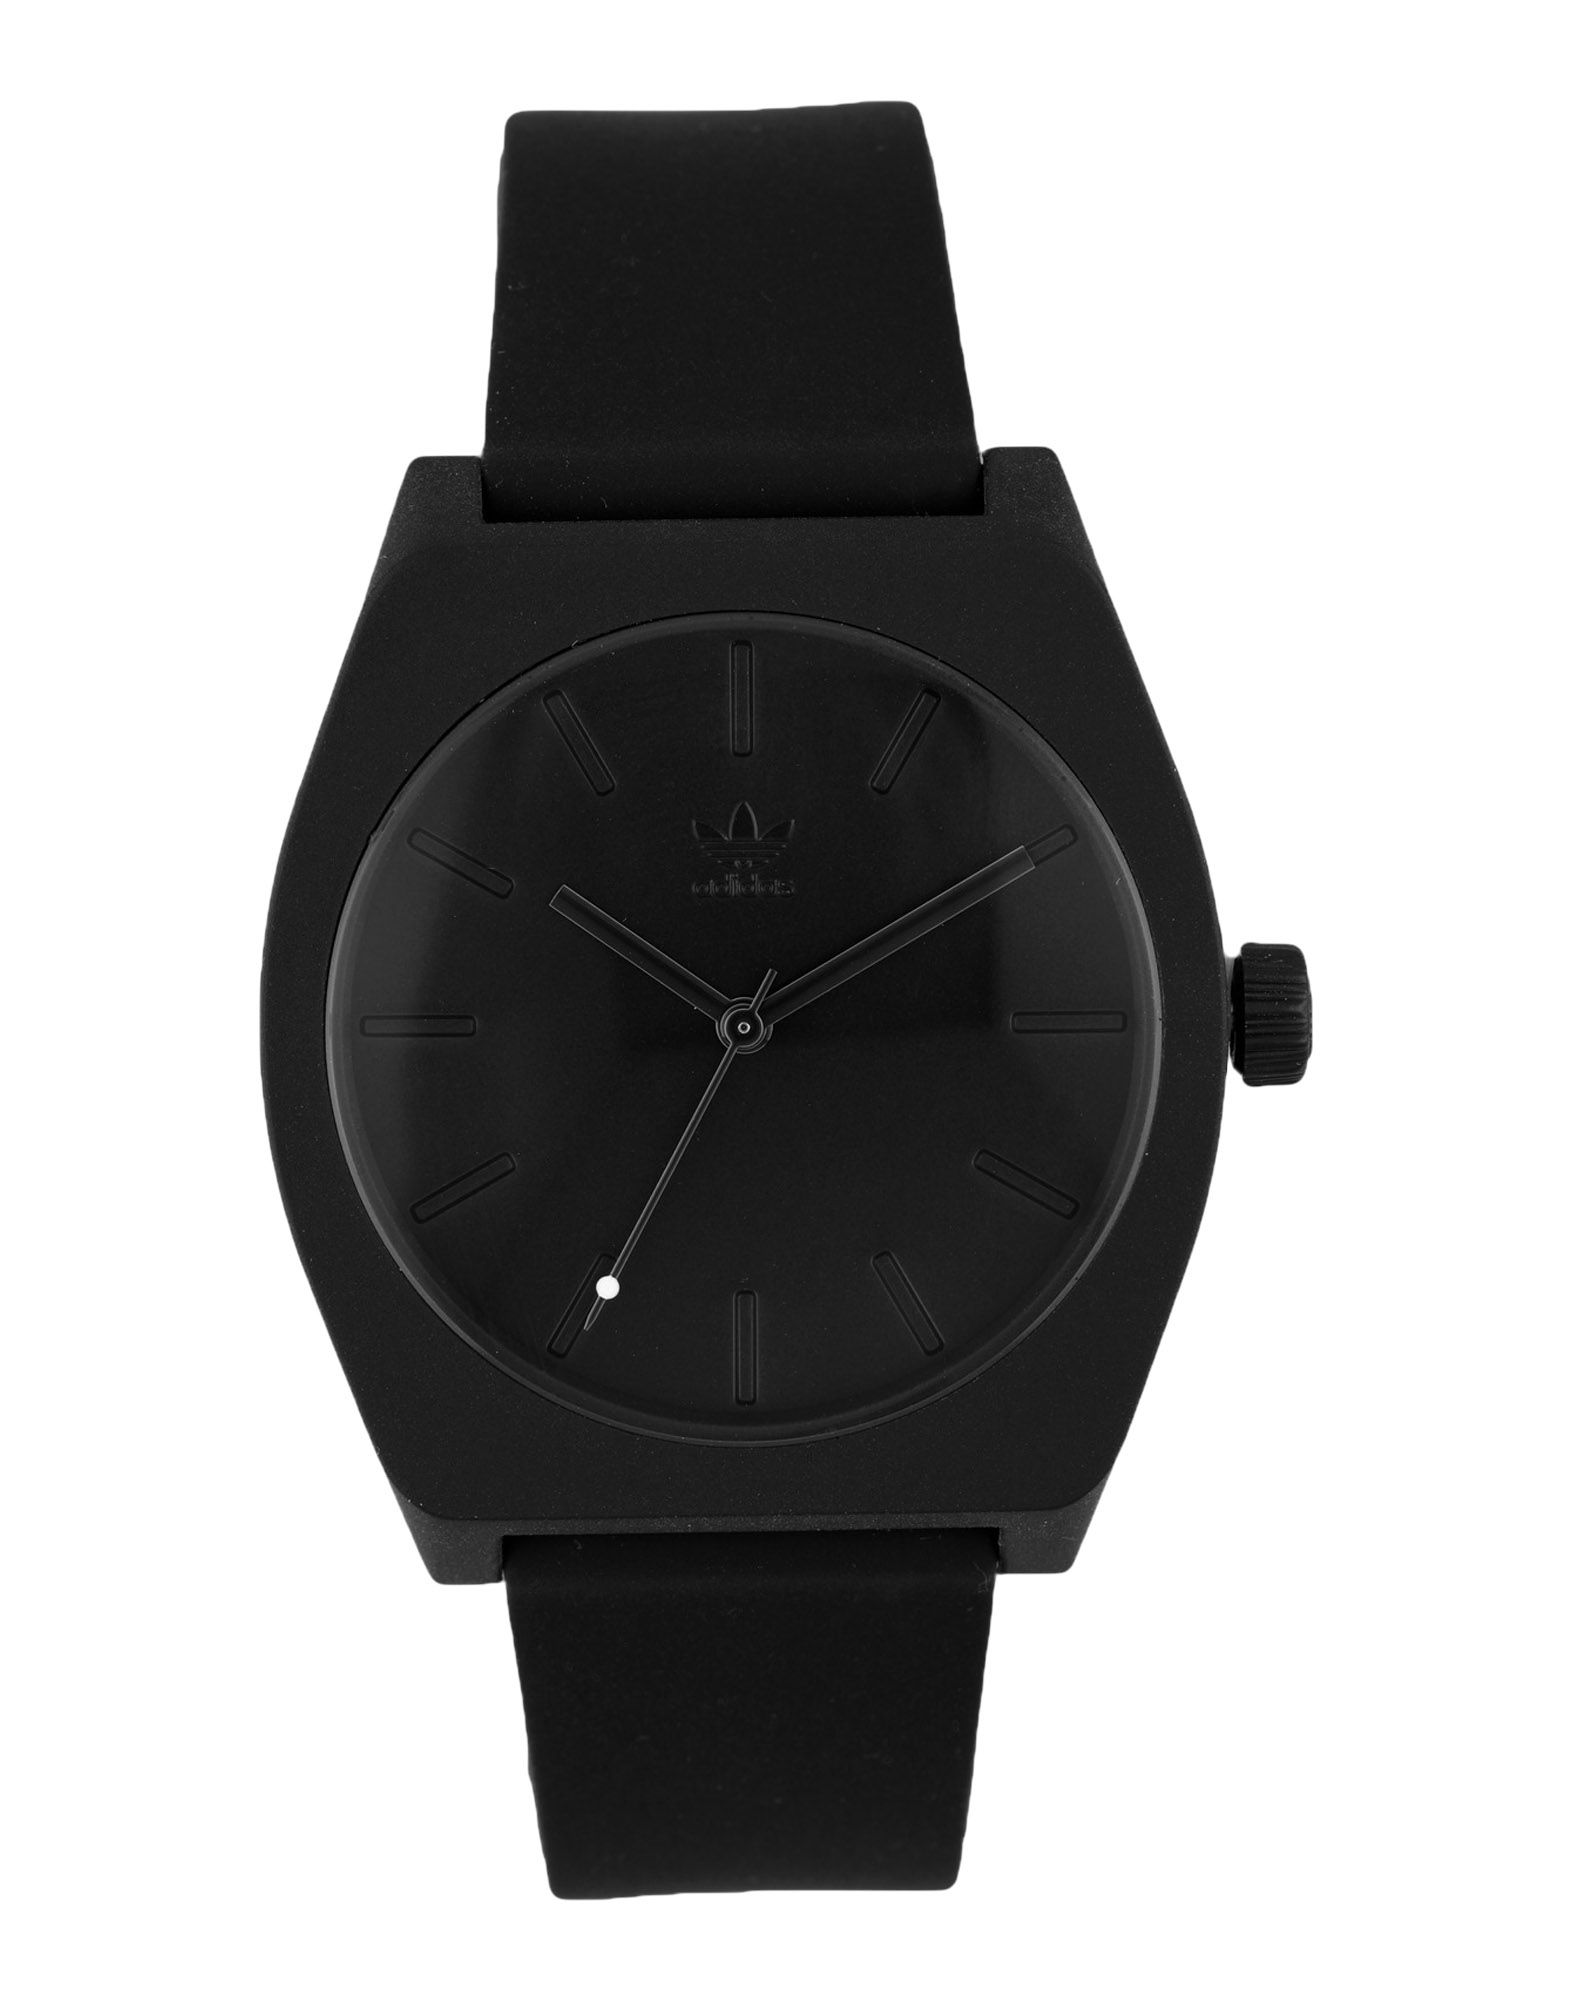 《送料無料》ADIDAS メンズ 腕時計 ブラック ステンレススチール / シリコン